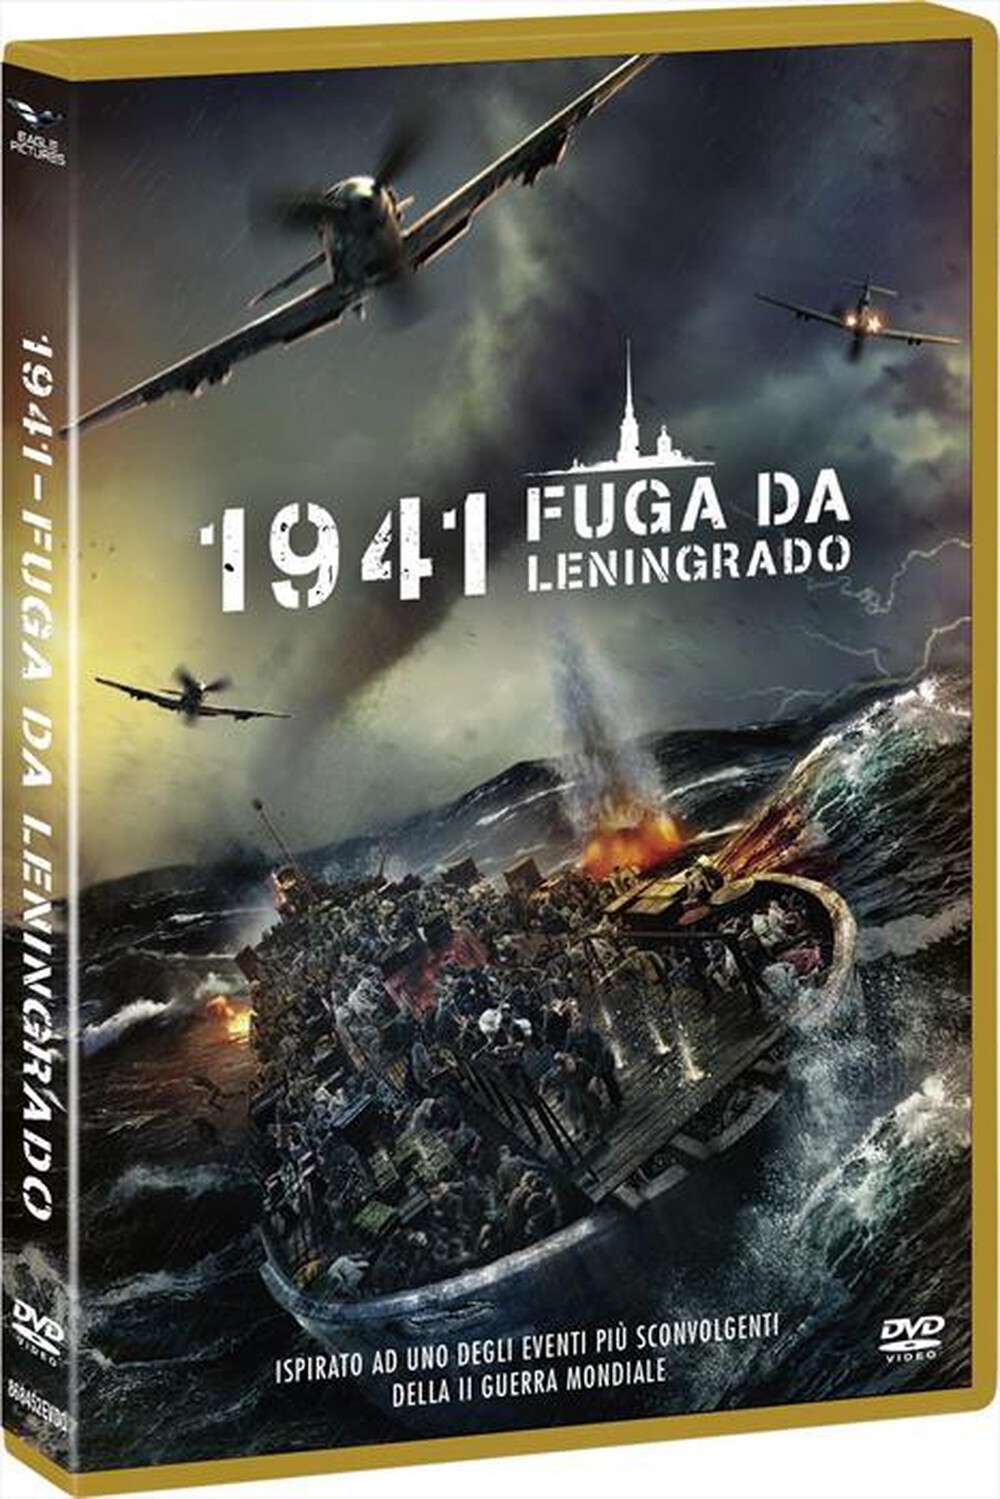 "EAGLE PICTURES - 1941 - Fuga Da Leningrado"